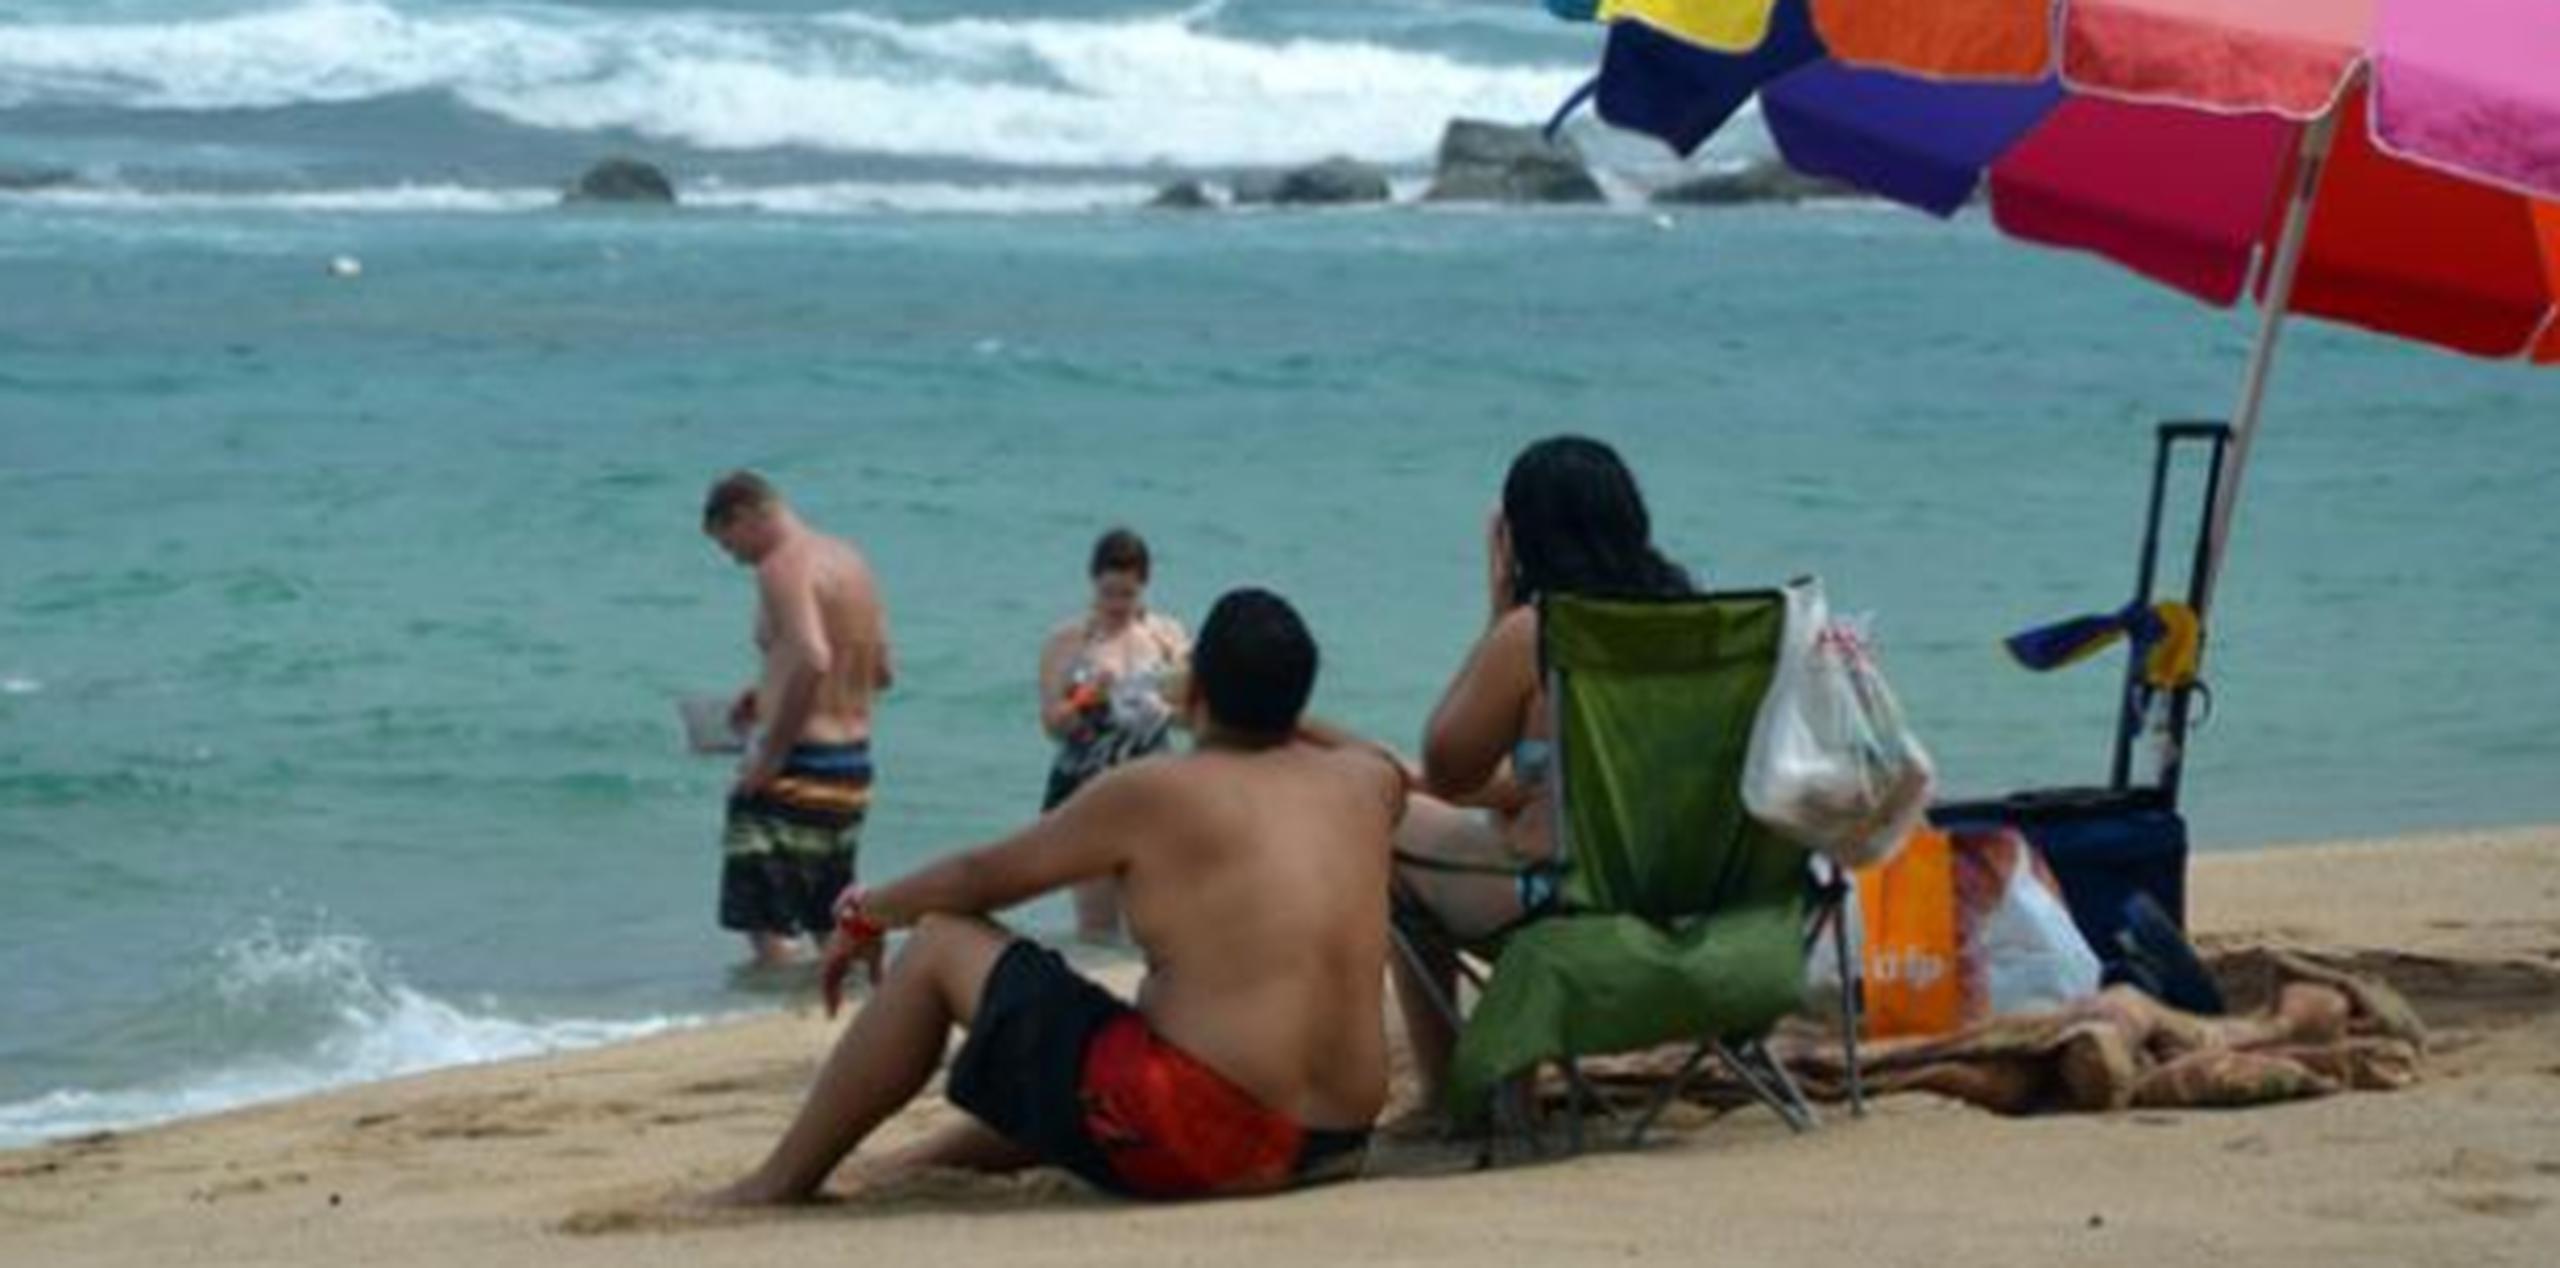 “El fin de semana estará bueno para visitar playas o tener una actividad al aire libre”, dijo el meteorólogo Ian Colón Pagán. (Archivo)

